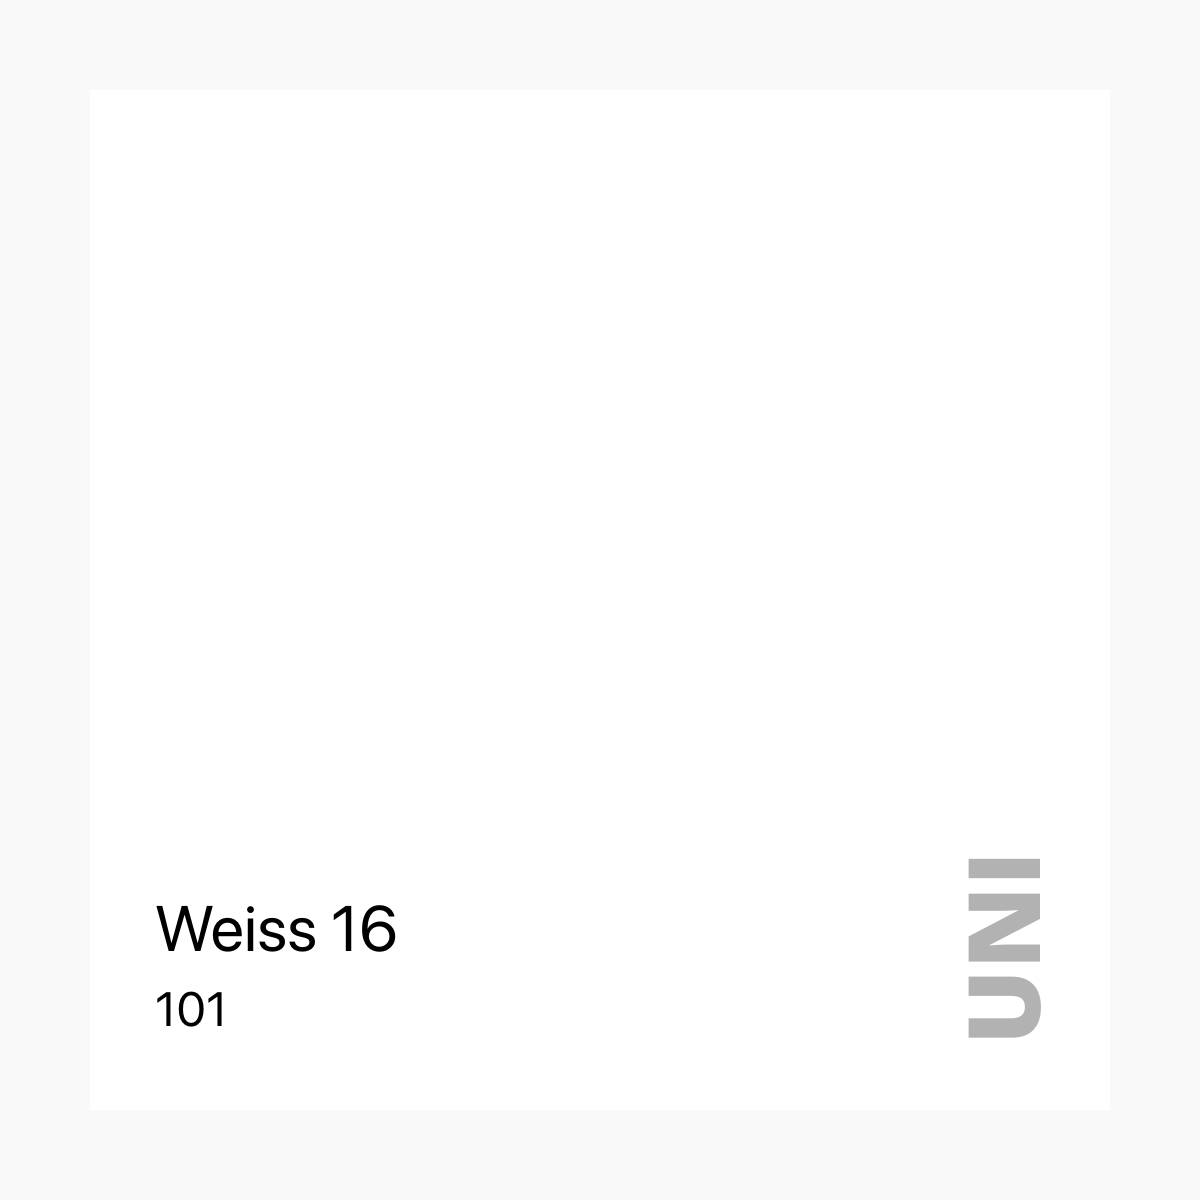 101 Weiss 16